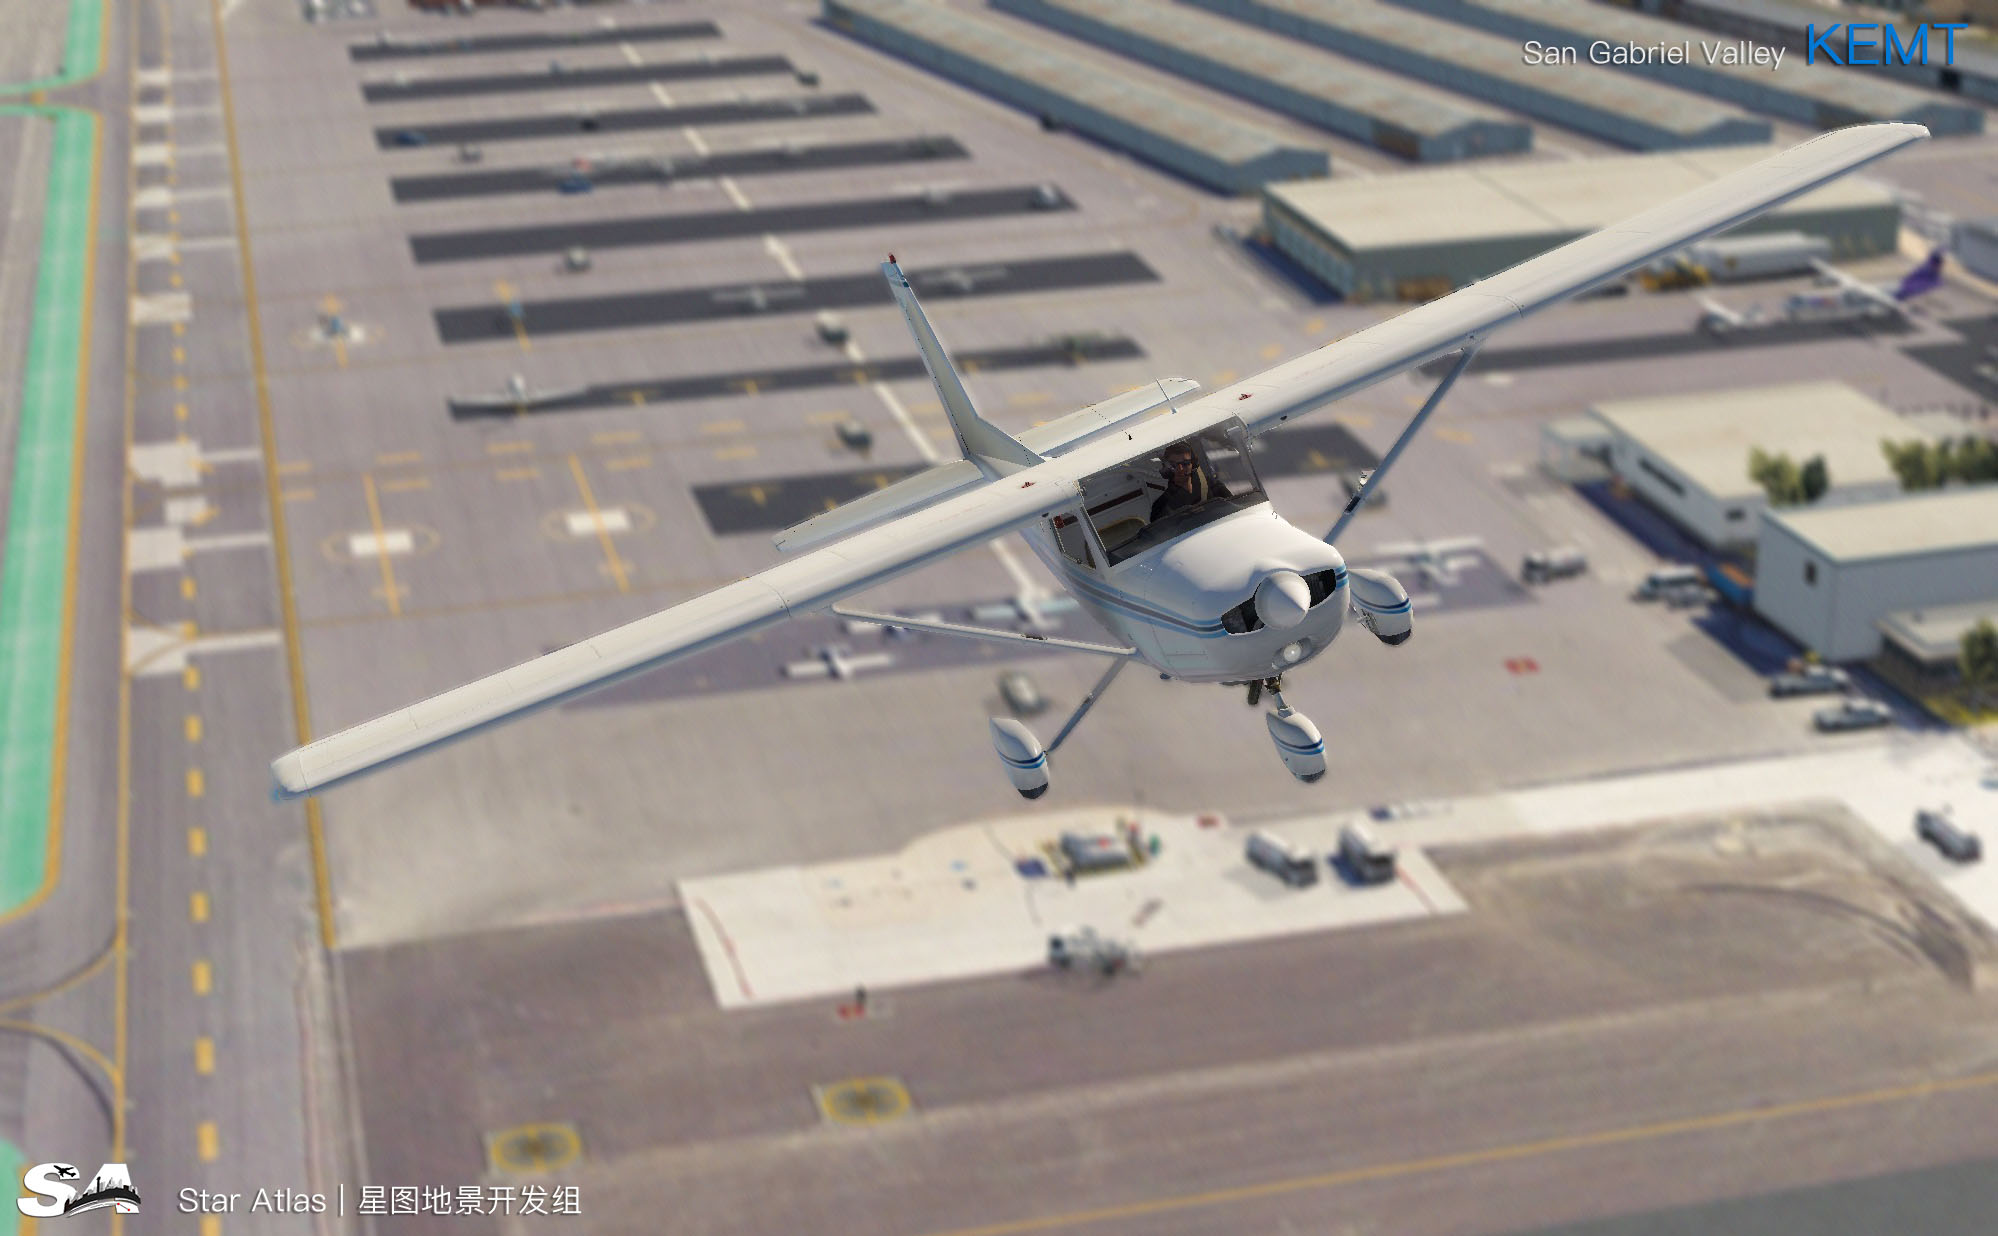 【X-Plane】KEMT-圣盖博谷机场 HD 1.0-7710 